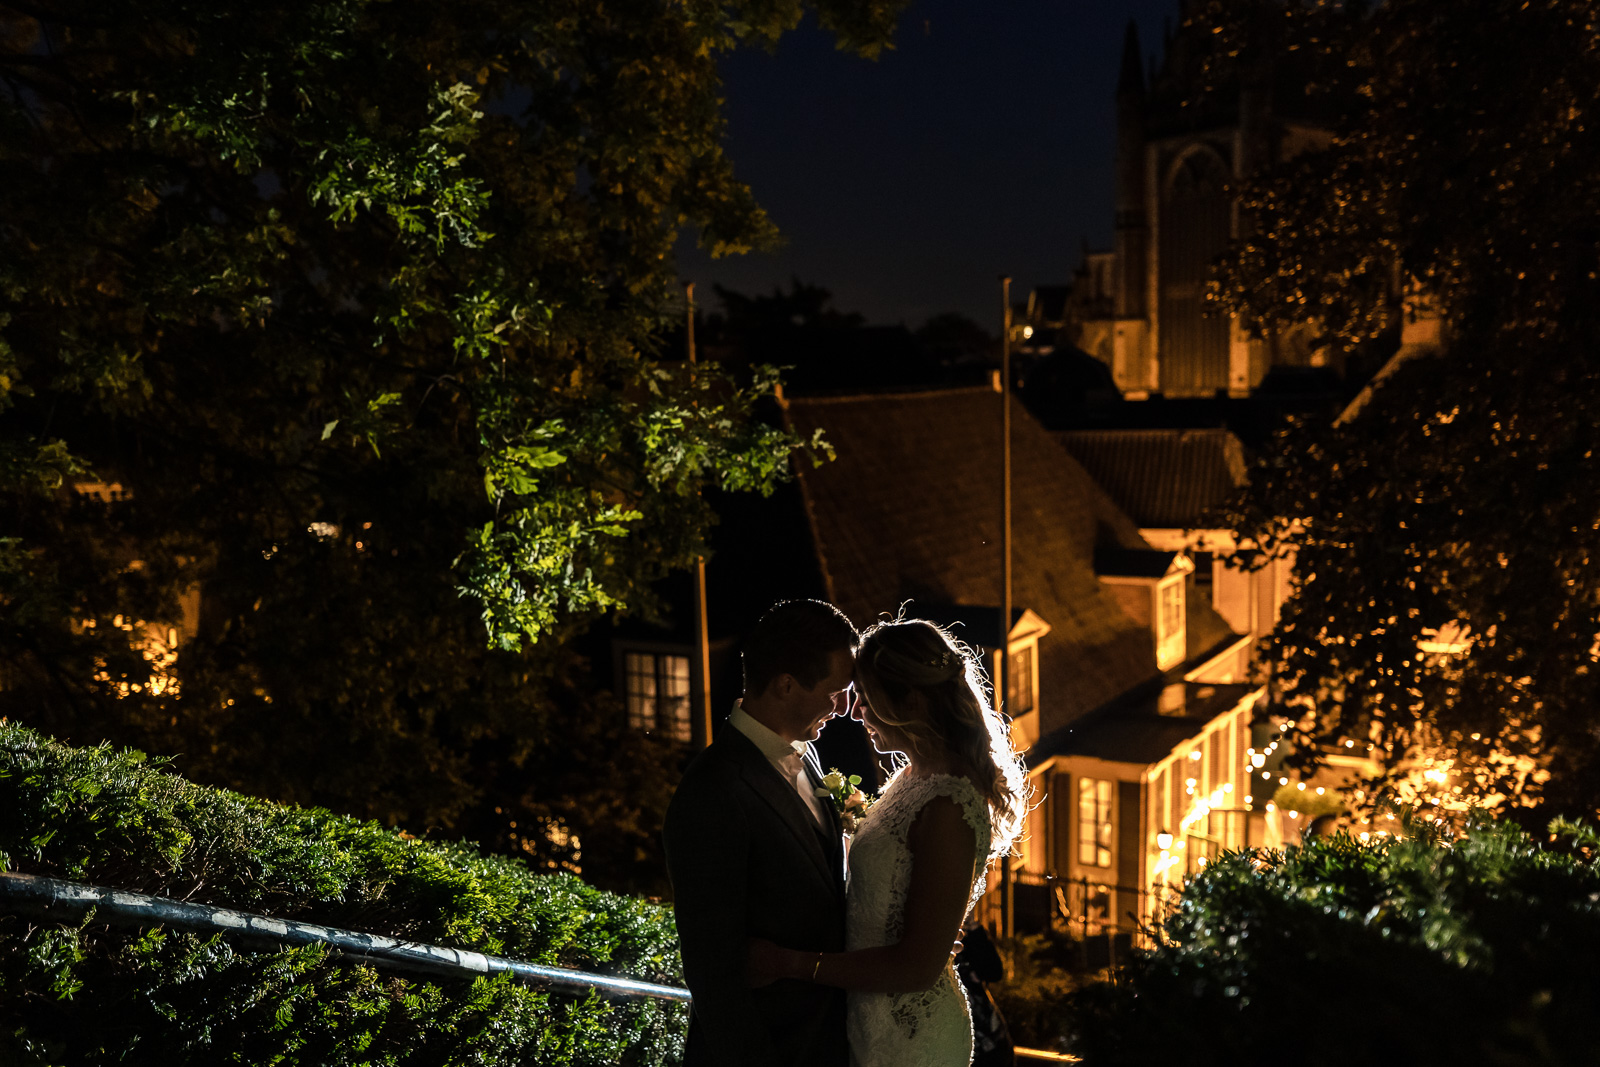 Trouwfotograaf Leiden creatieve avond fotoshoot met bruidspaar bij de burcht in leiden